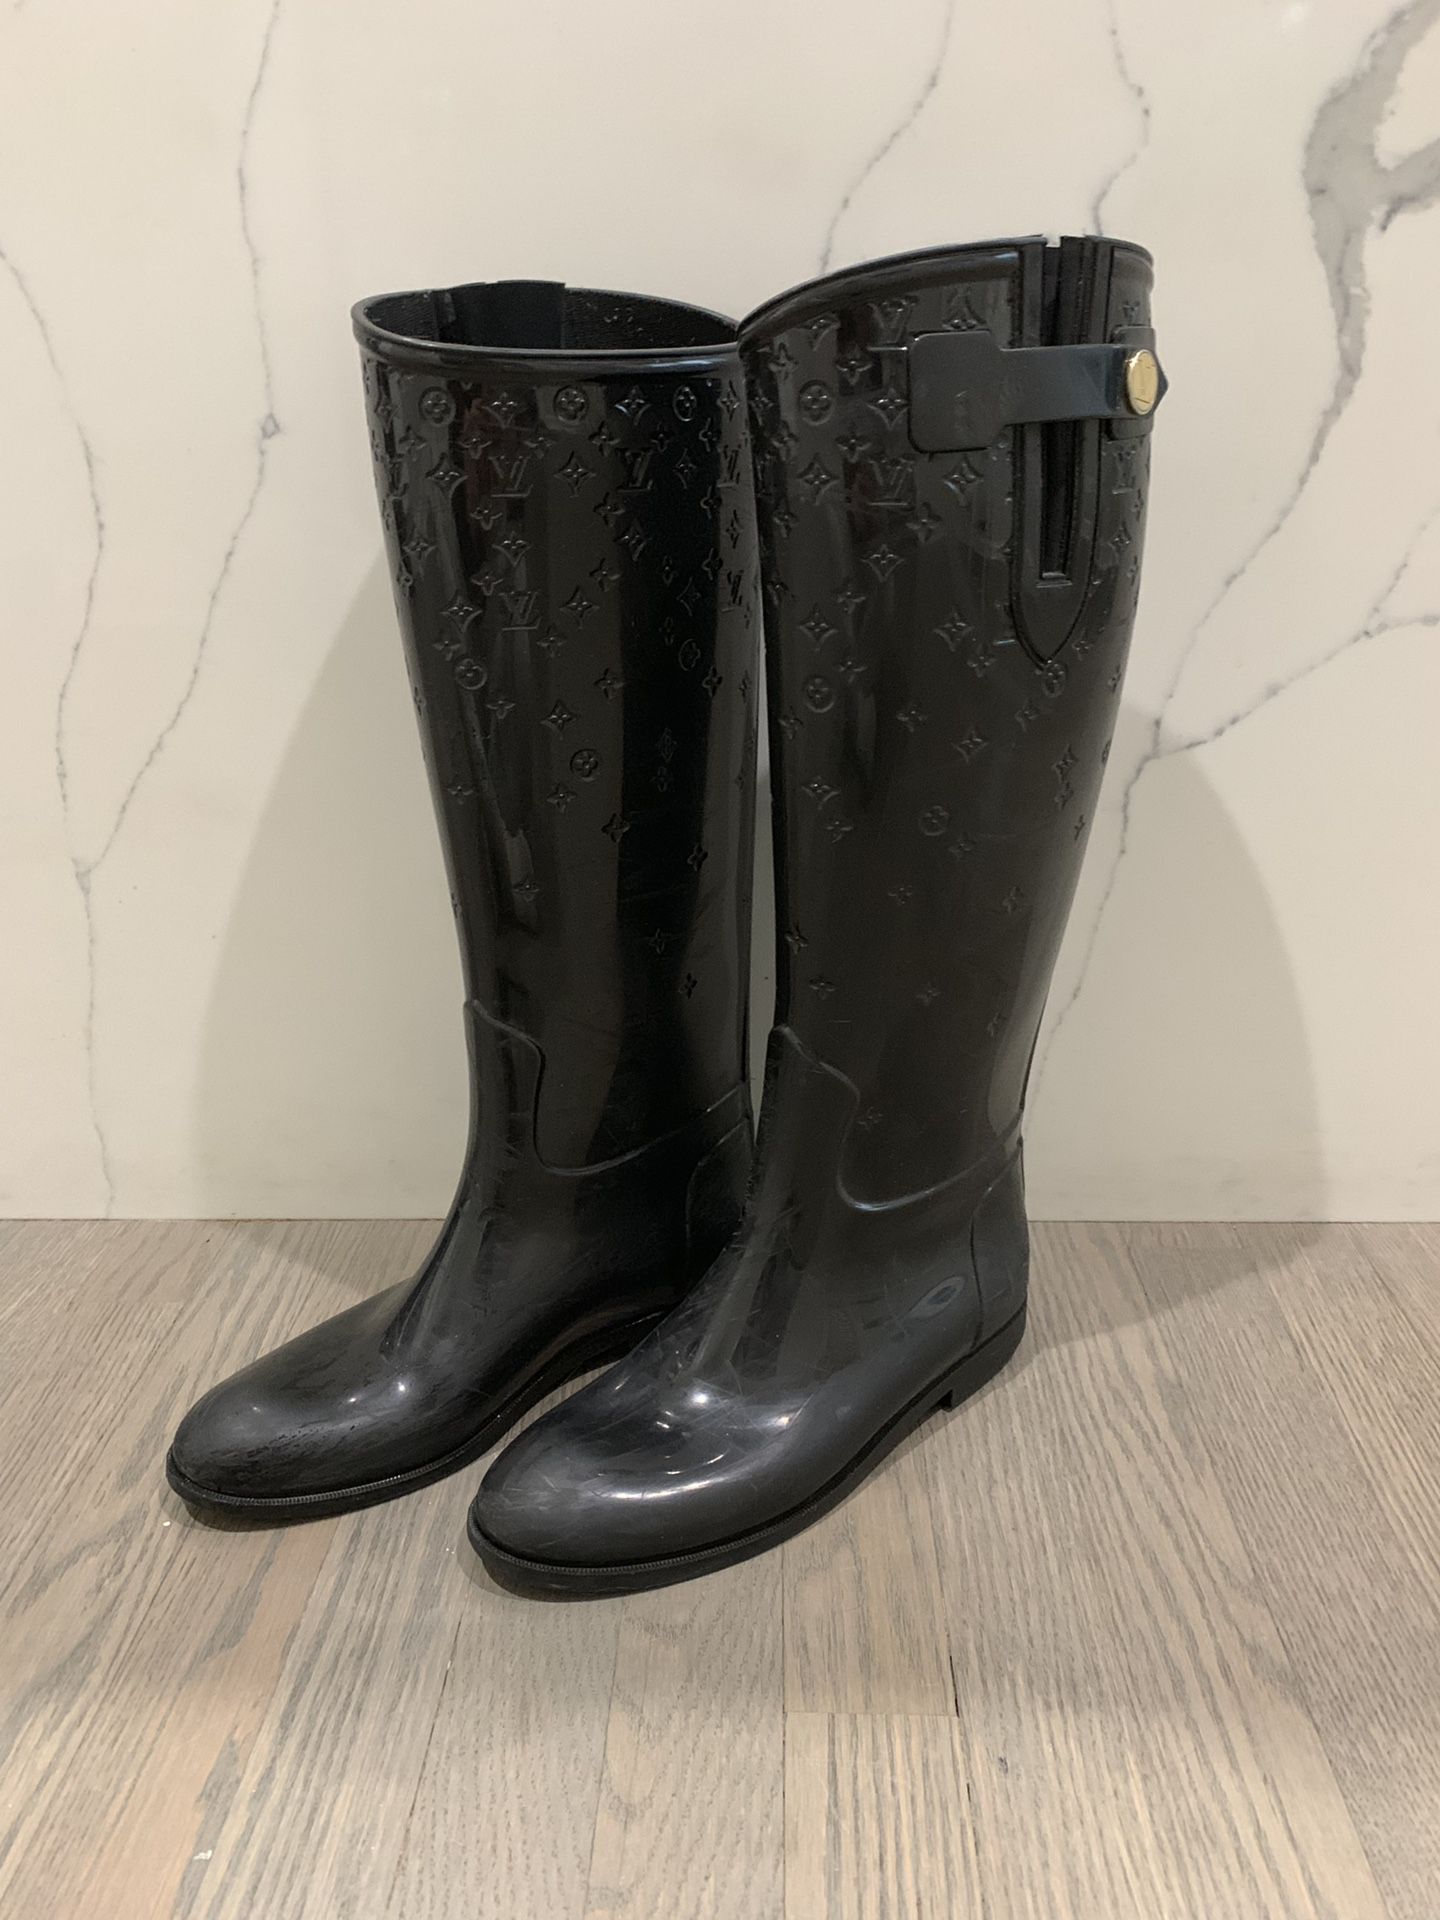 Louis Vuitton rain boots size 39